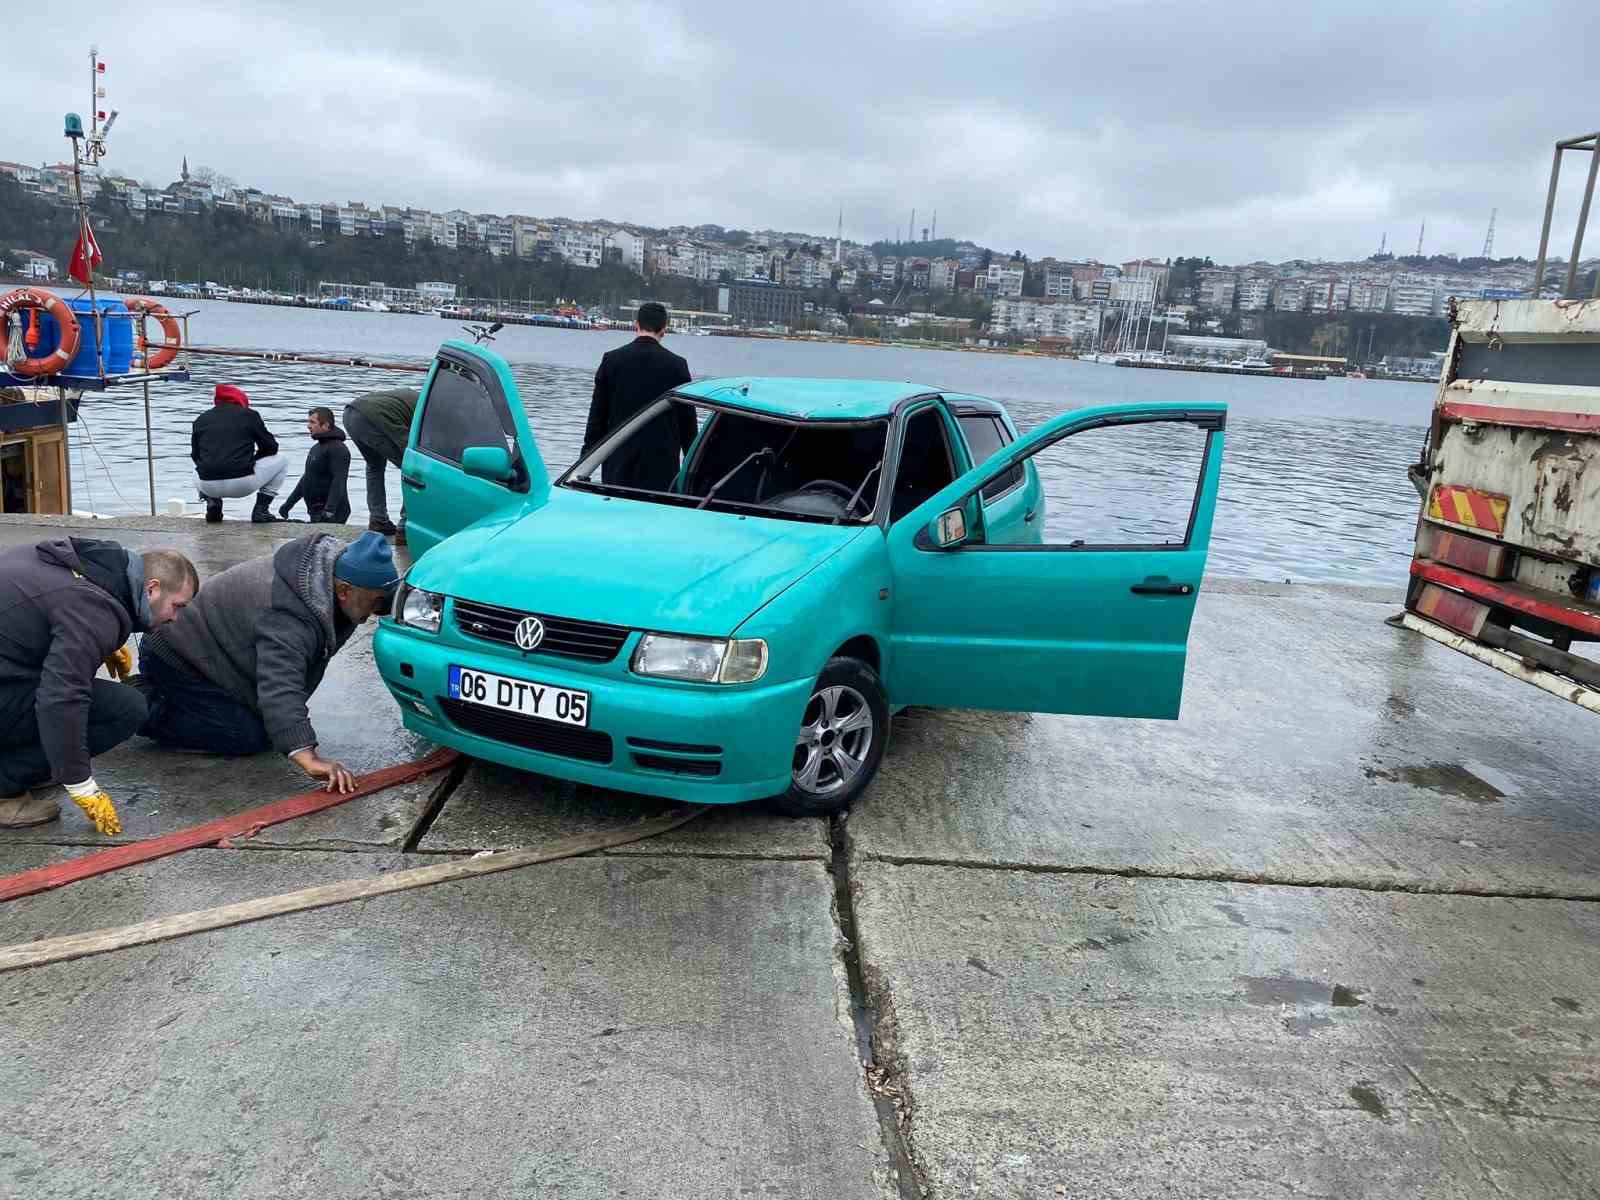 Şile Limanı’nda gece saatlerinde denize düşen otomobil çıkartıldı
